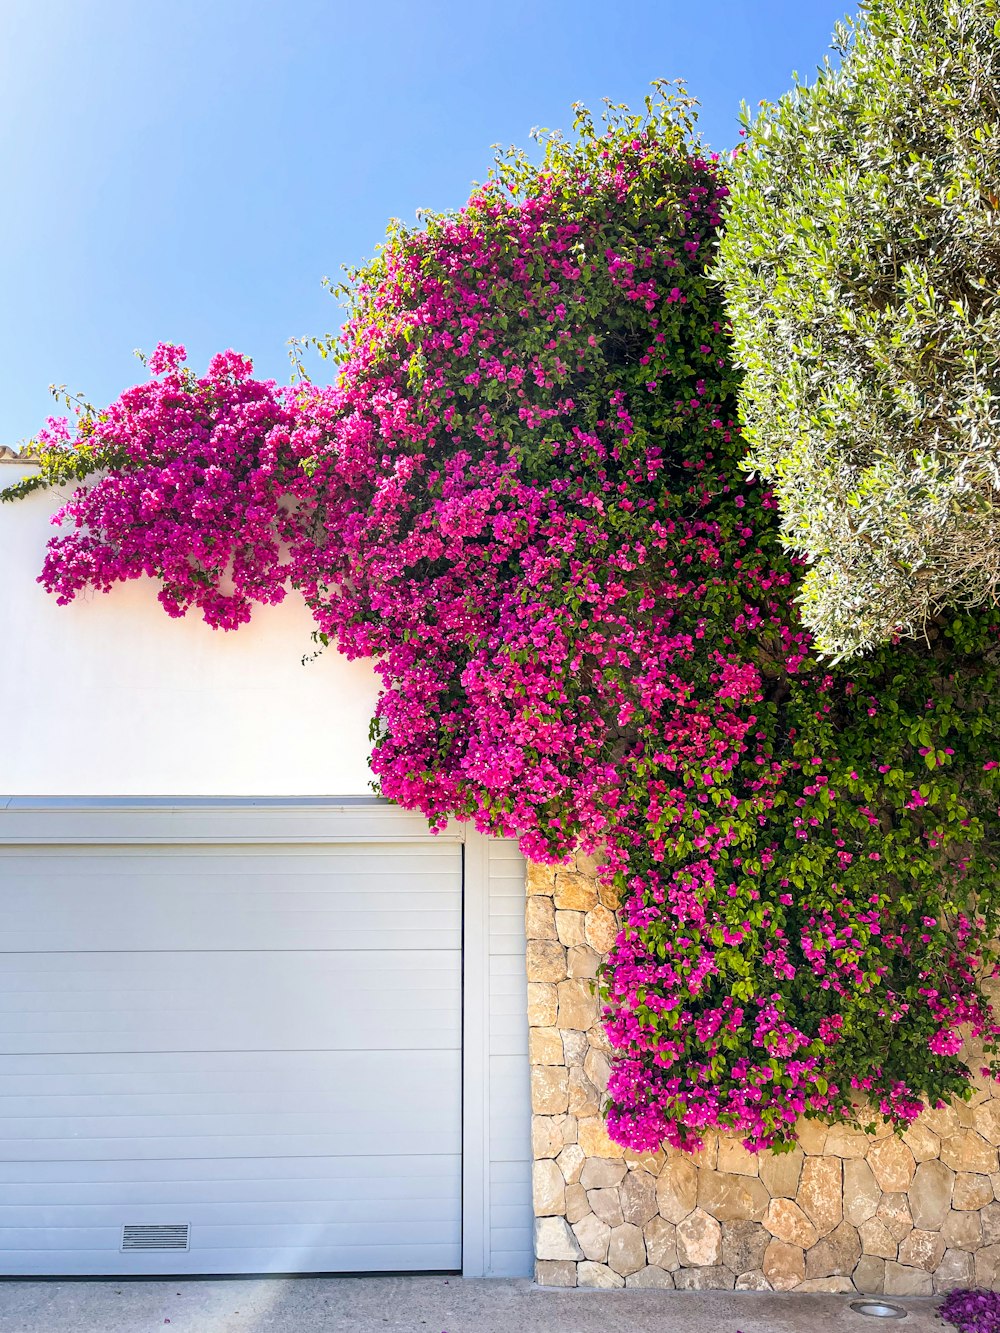 una porta bianca del garage seduta accanto a un muro coperto di fiori viola